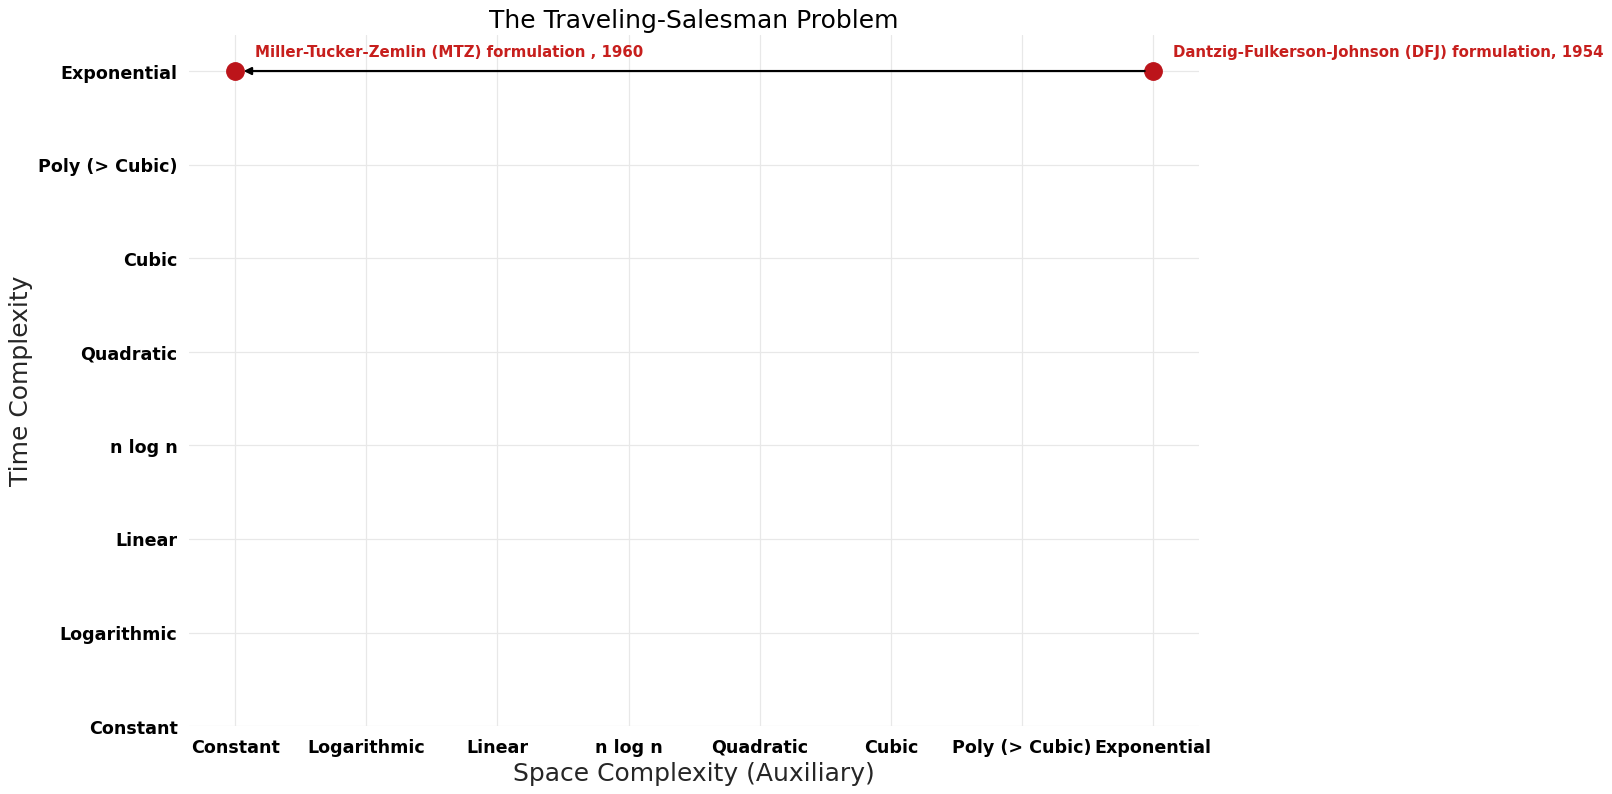 The Traveling-Salesman Problem - Pareto Frontier.png